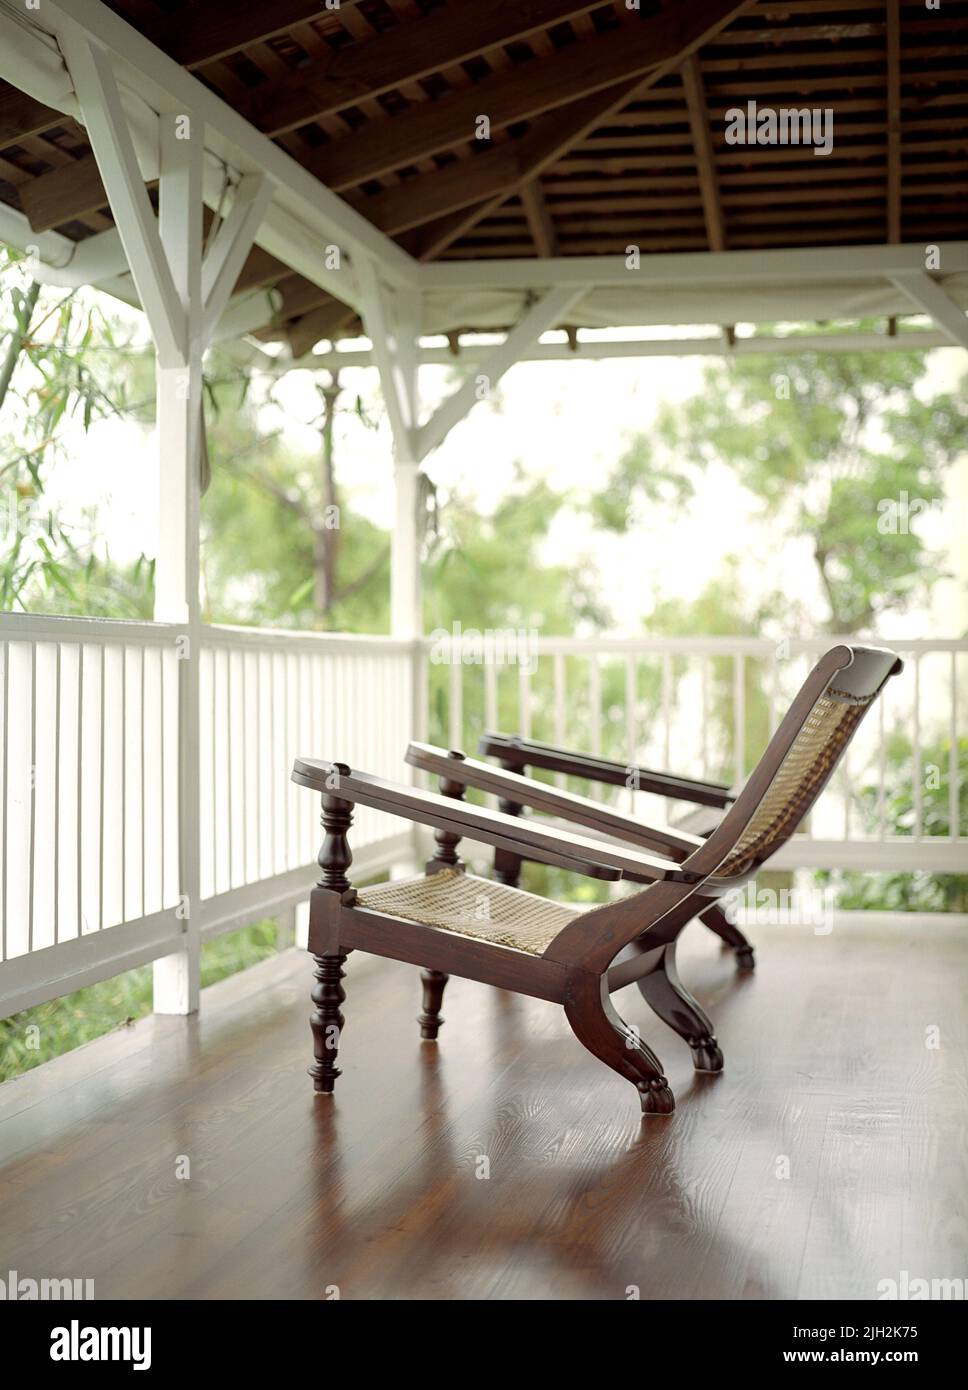 Les chaises longues invitent les clients à se détendre dans un centre de villégiature de la Jamaïque. Banque D'Images